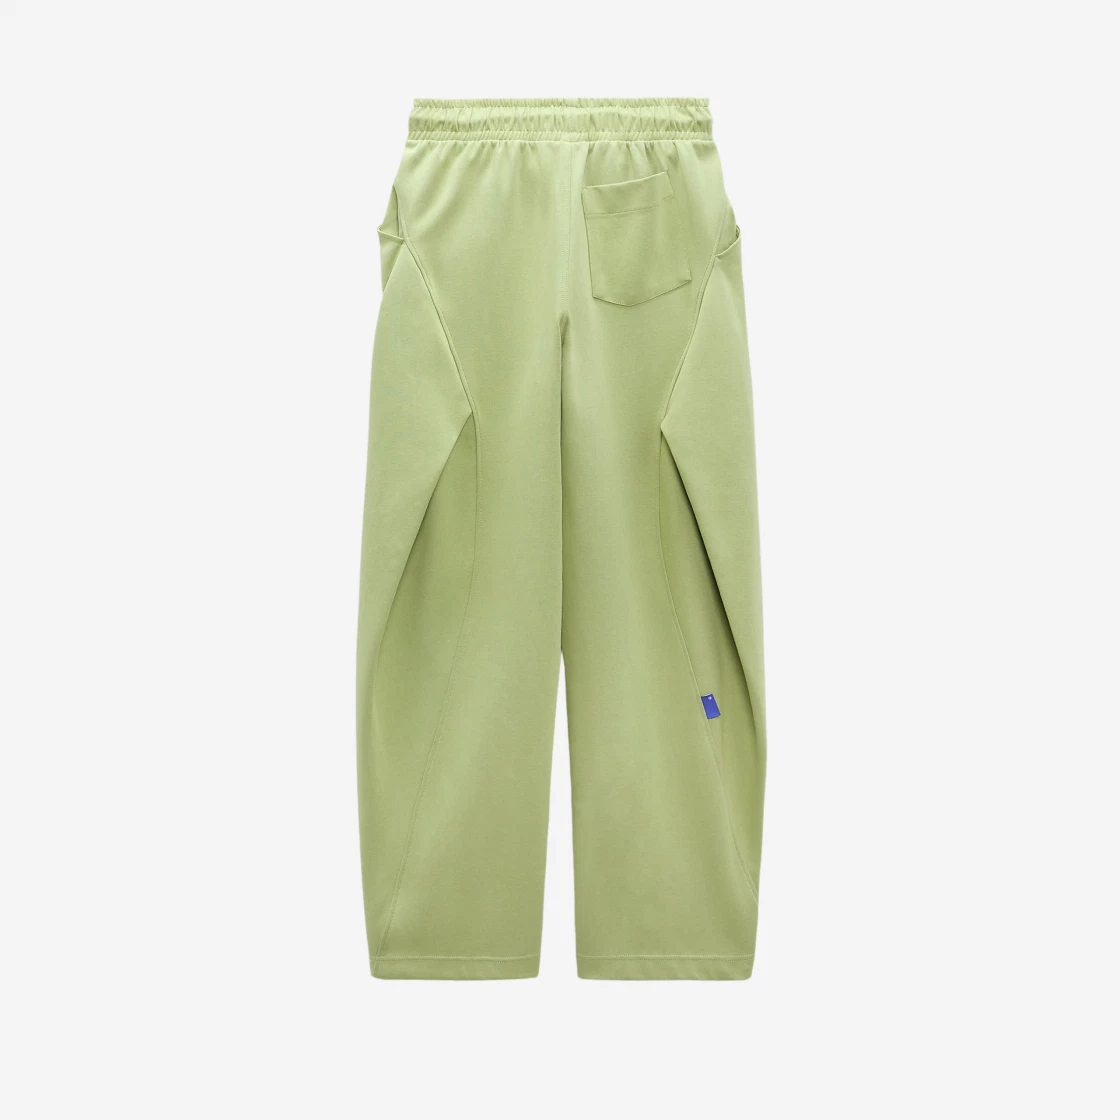 Ader Error x Zara Jogger Pants Light Green